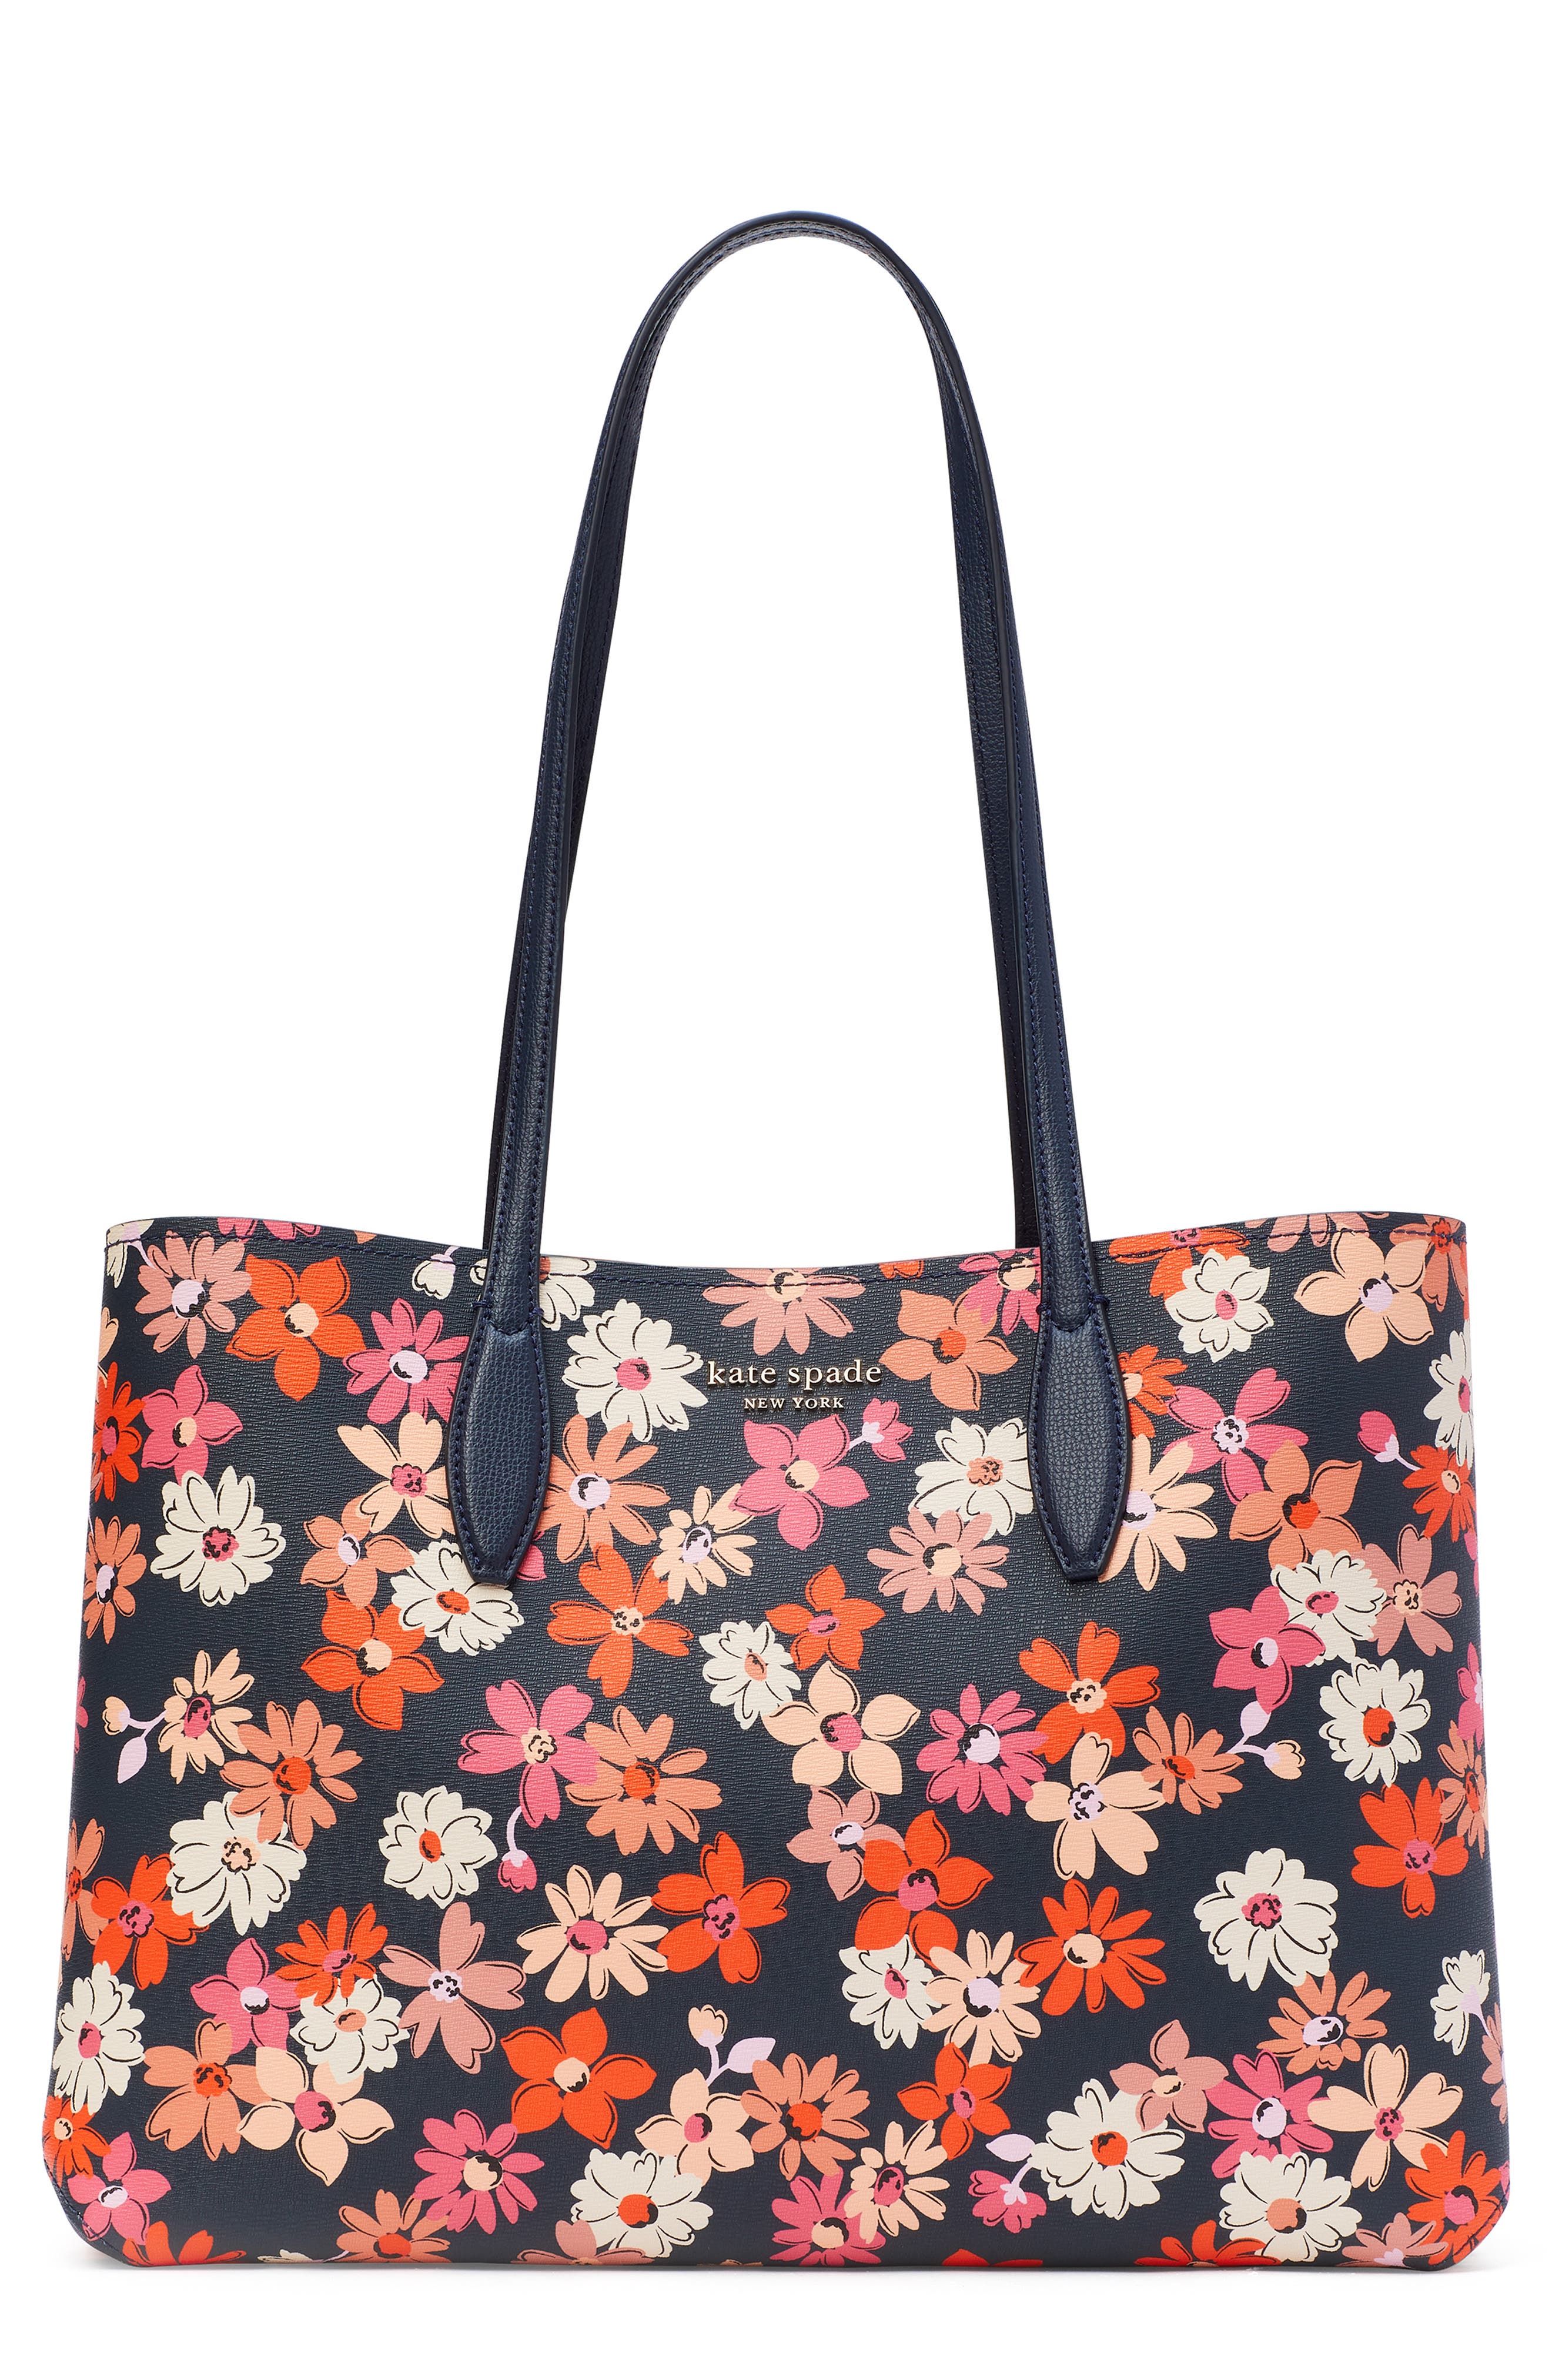 Turkis Kilim Design Floral Leather Bag Crossbody Shoulder Bags Designer Handbag